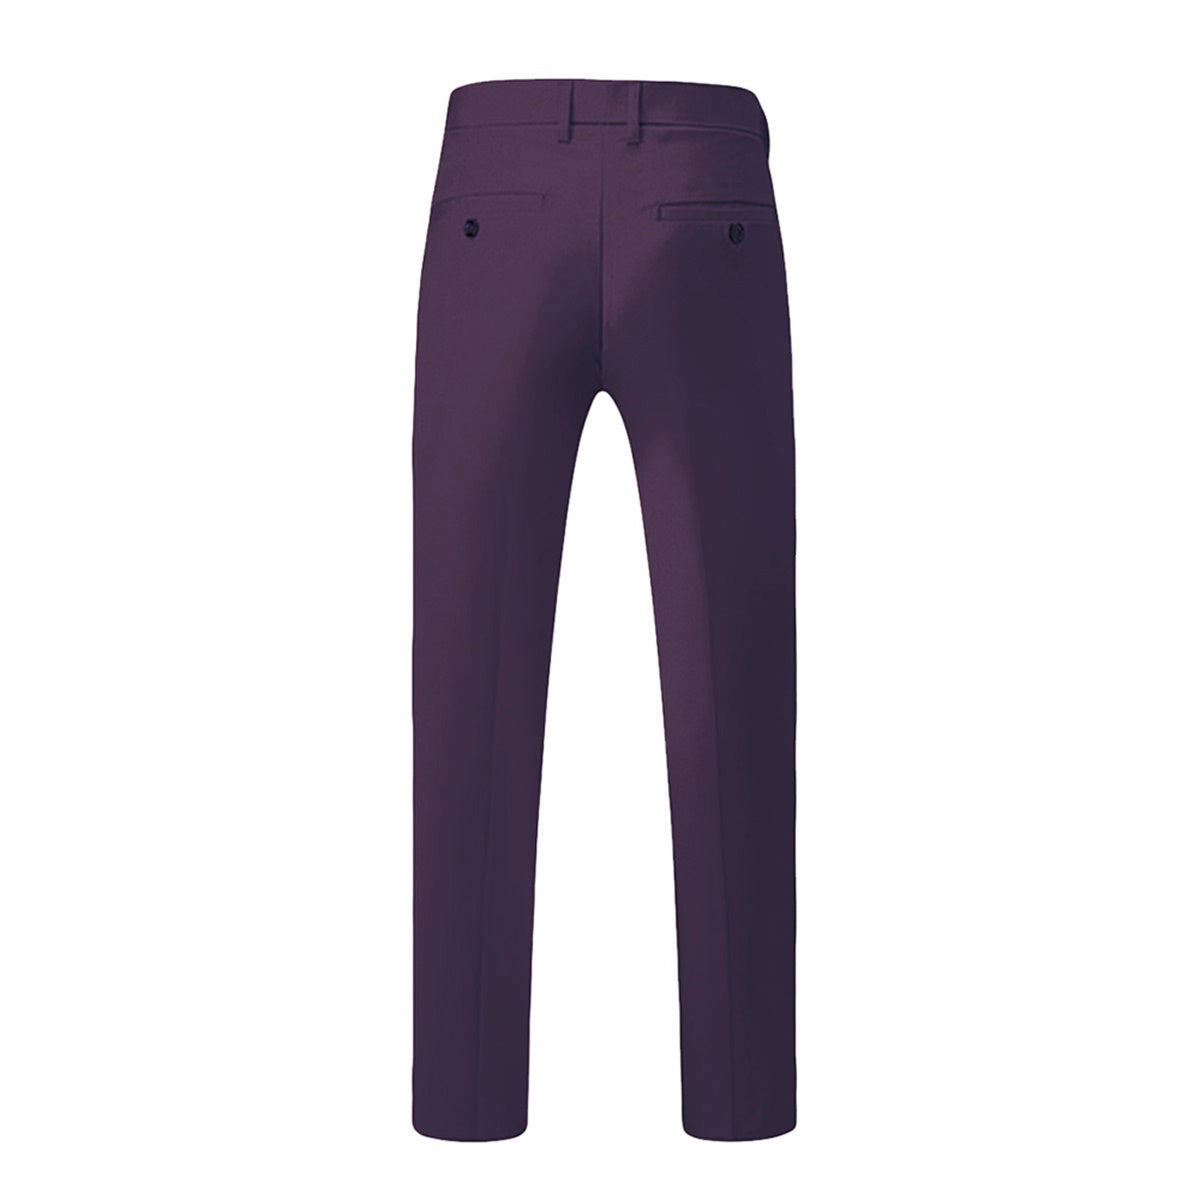 Purple 3-Piece Suit Slim Fit Two Button Suit